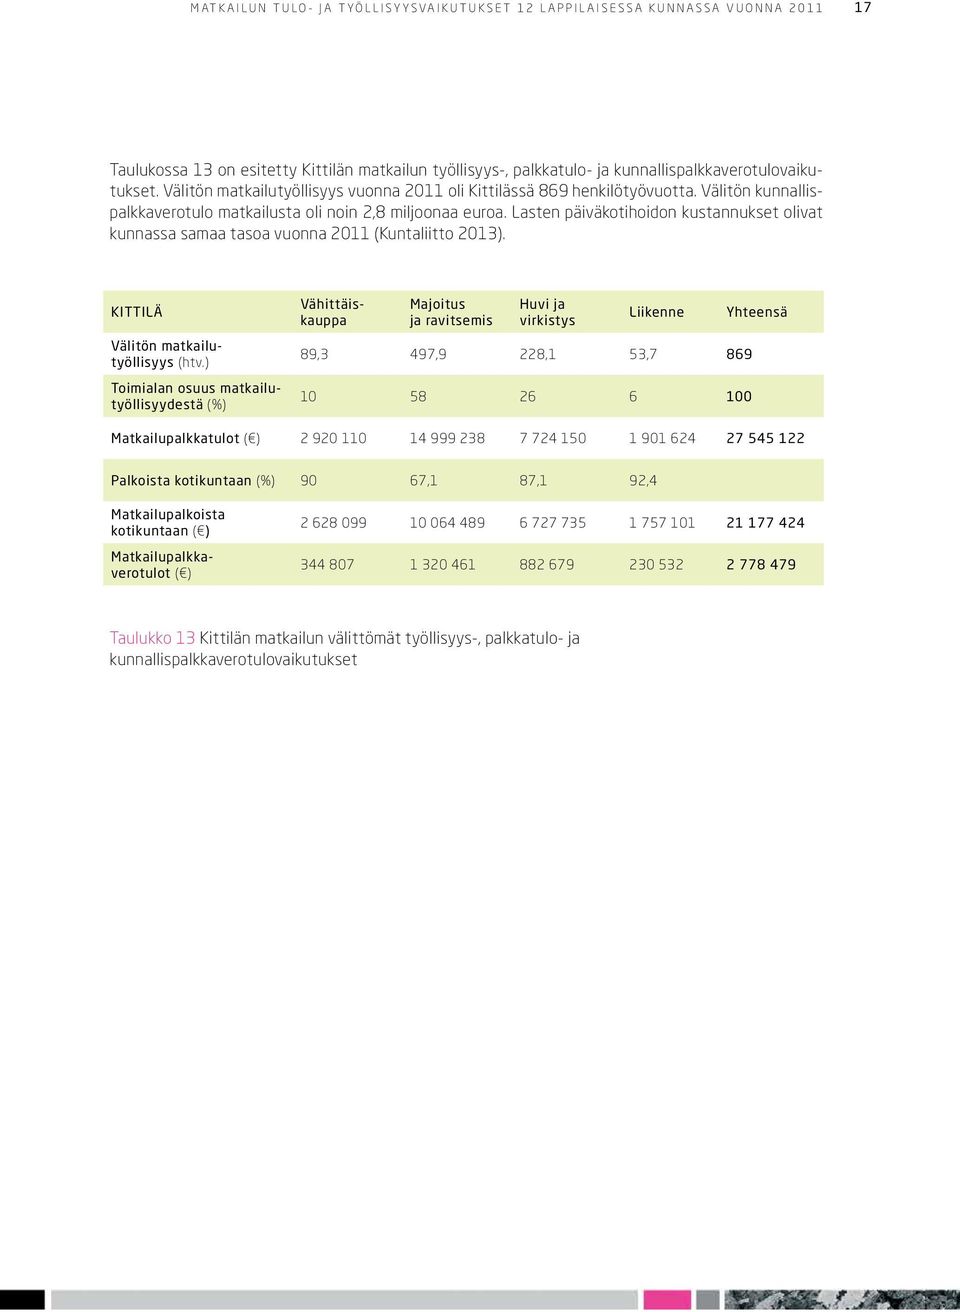 Lasten päiväkotihoidon kustannukset olivat kunnassa samaa tasoa vuonna 2011 (Kuntaliitto 2013). KITTILÄ Välitön matkailutyöllisyys (htv.